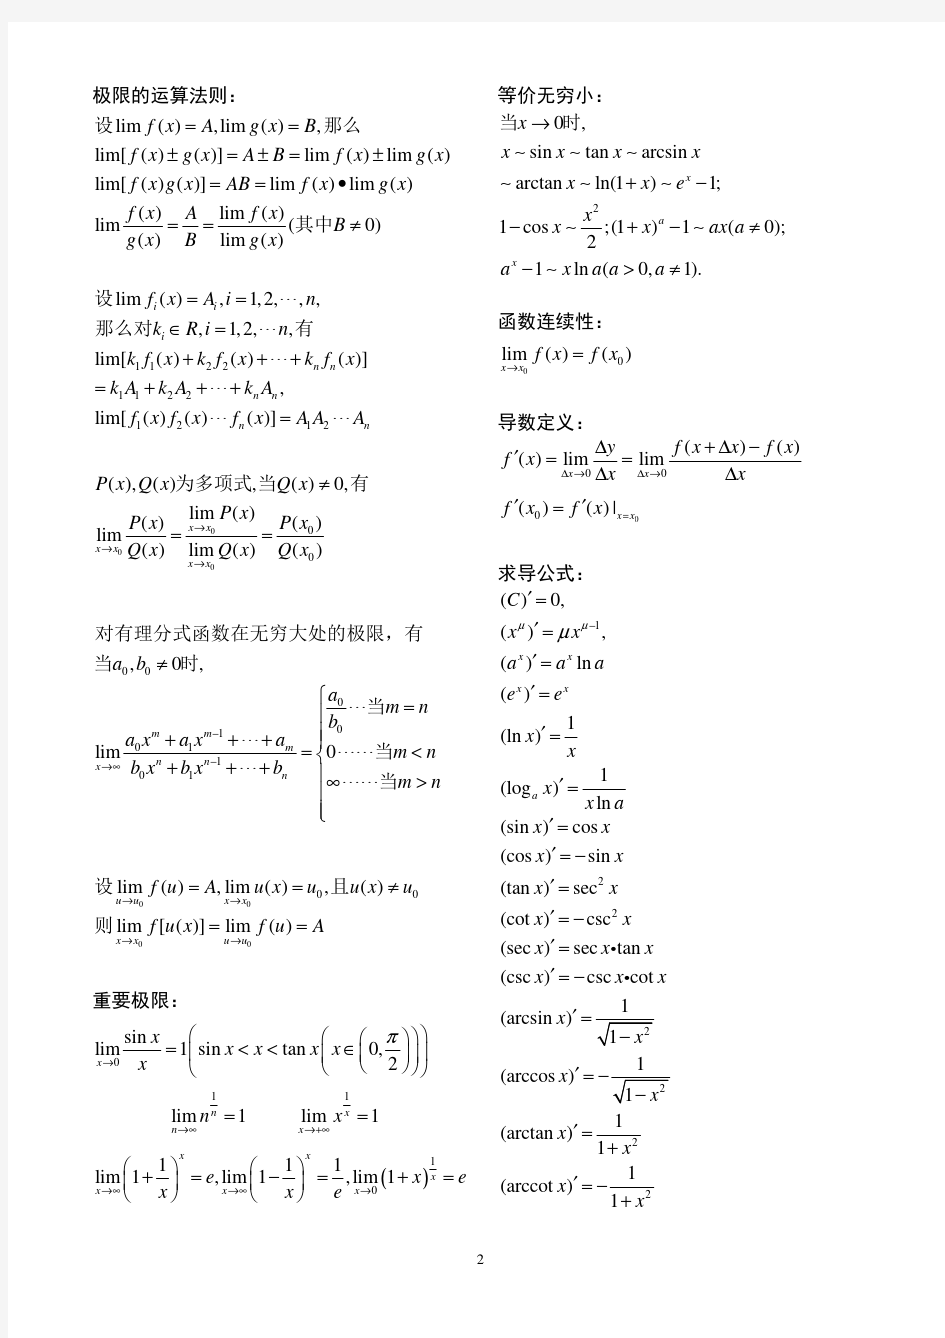 微积分常用公式及运算法则(上册)